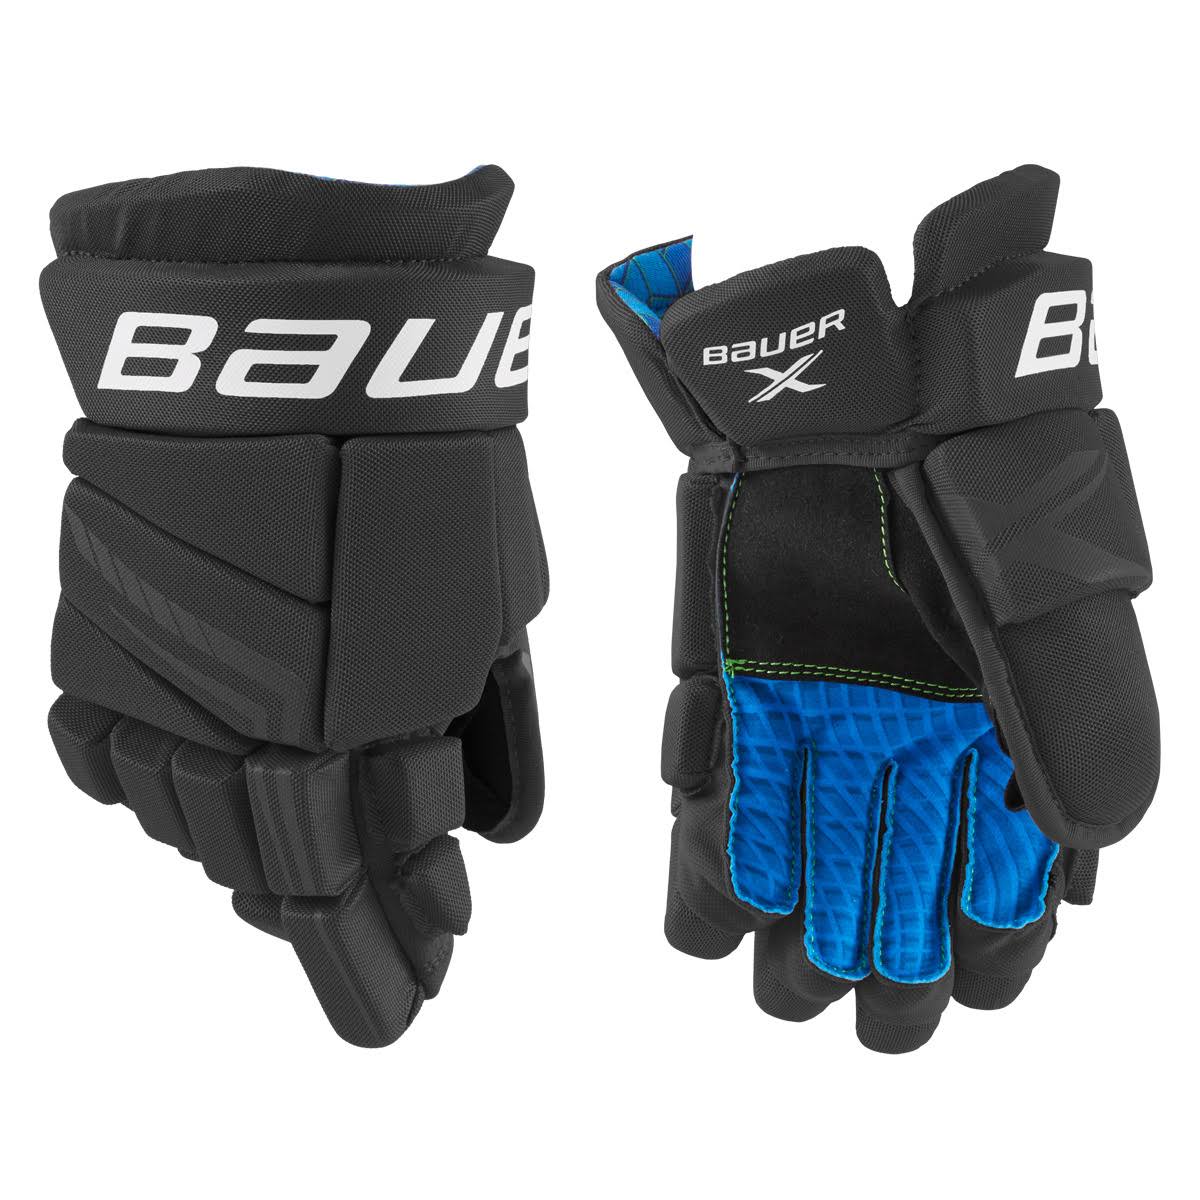 Bauer X Junior Hockey Gloves - 10 - Black/White